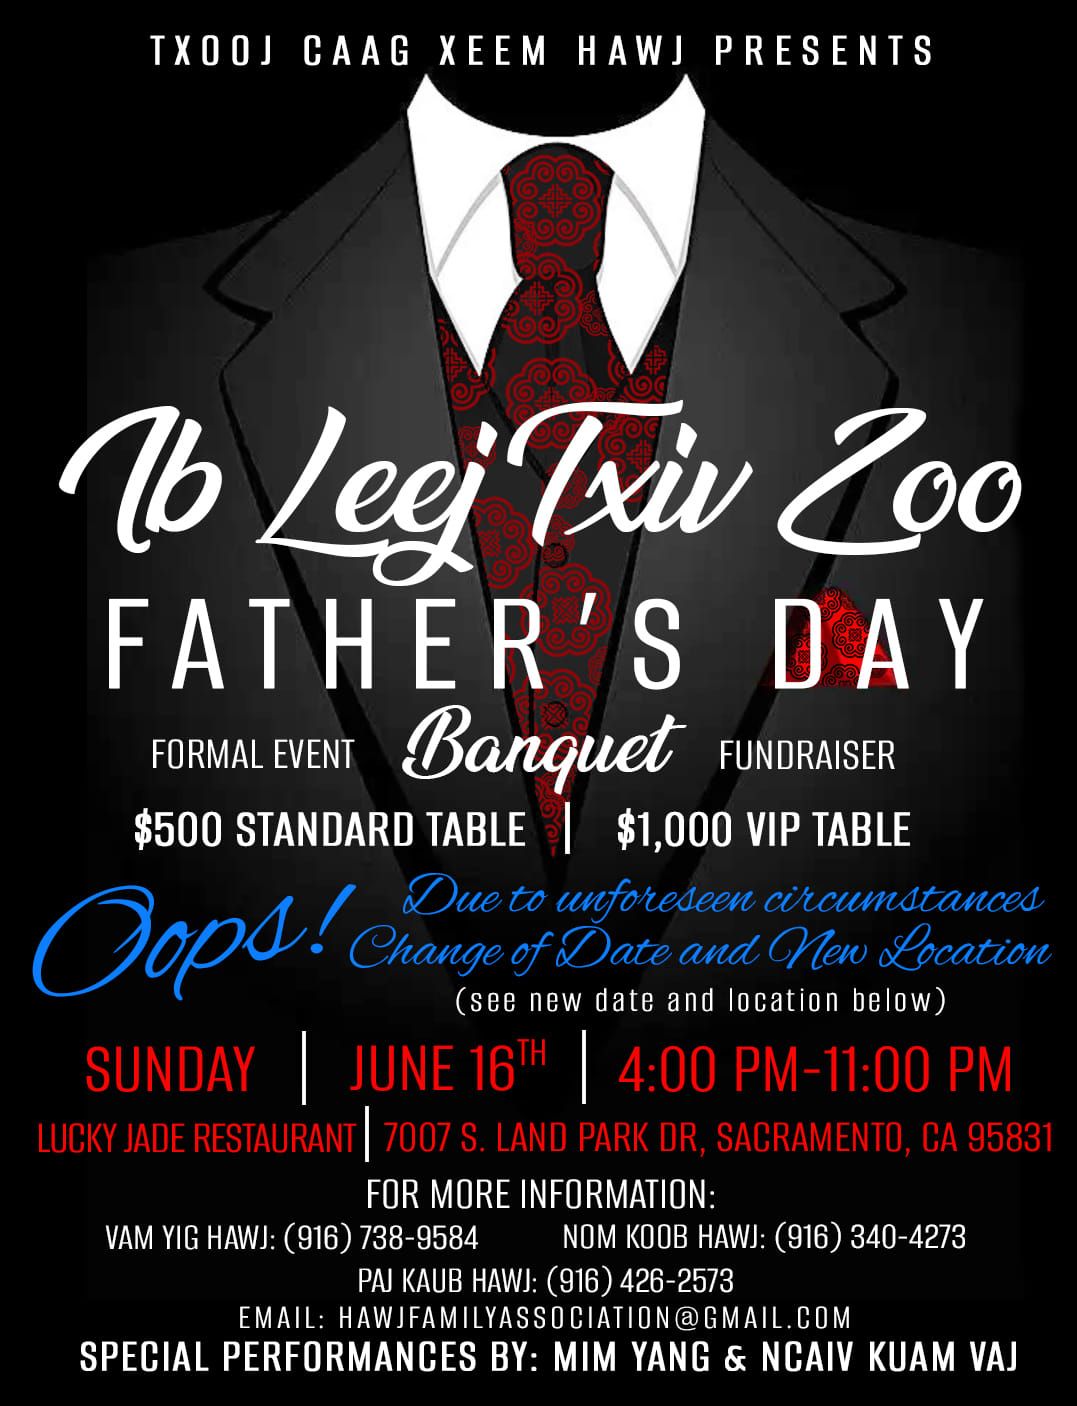 "Ib Leej Txiv Zoo" Father's Day Banquet 